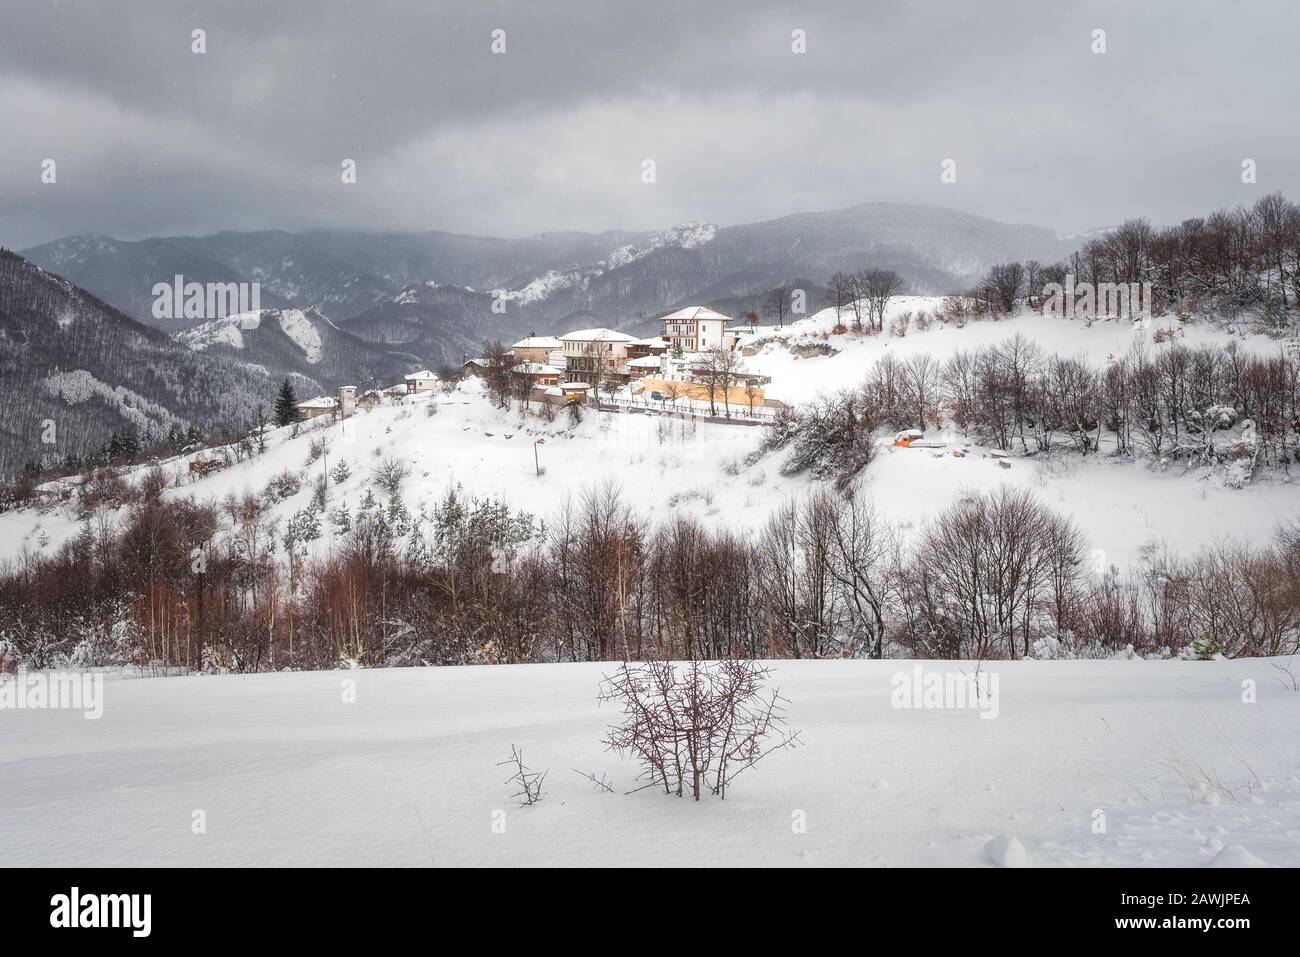 Village de Vrata, montagne de Rhodope, Bulgarie. Paysage enneigé d'hiver Banque D'Images